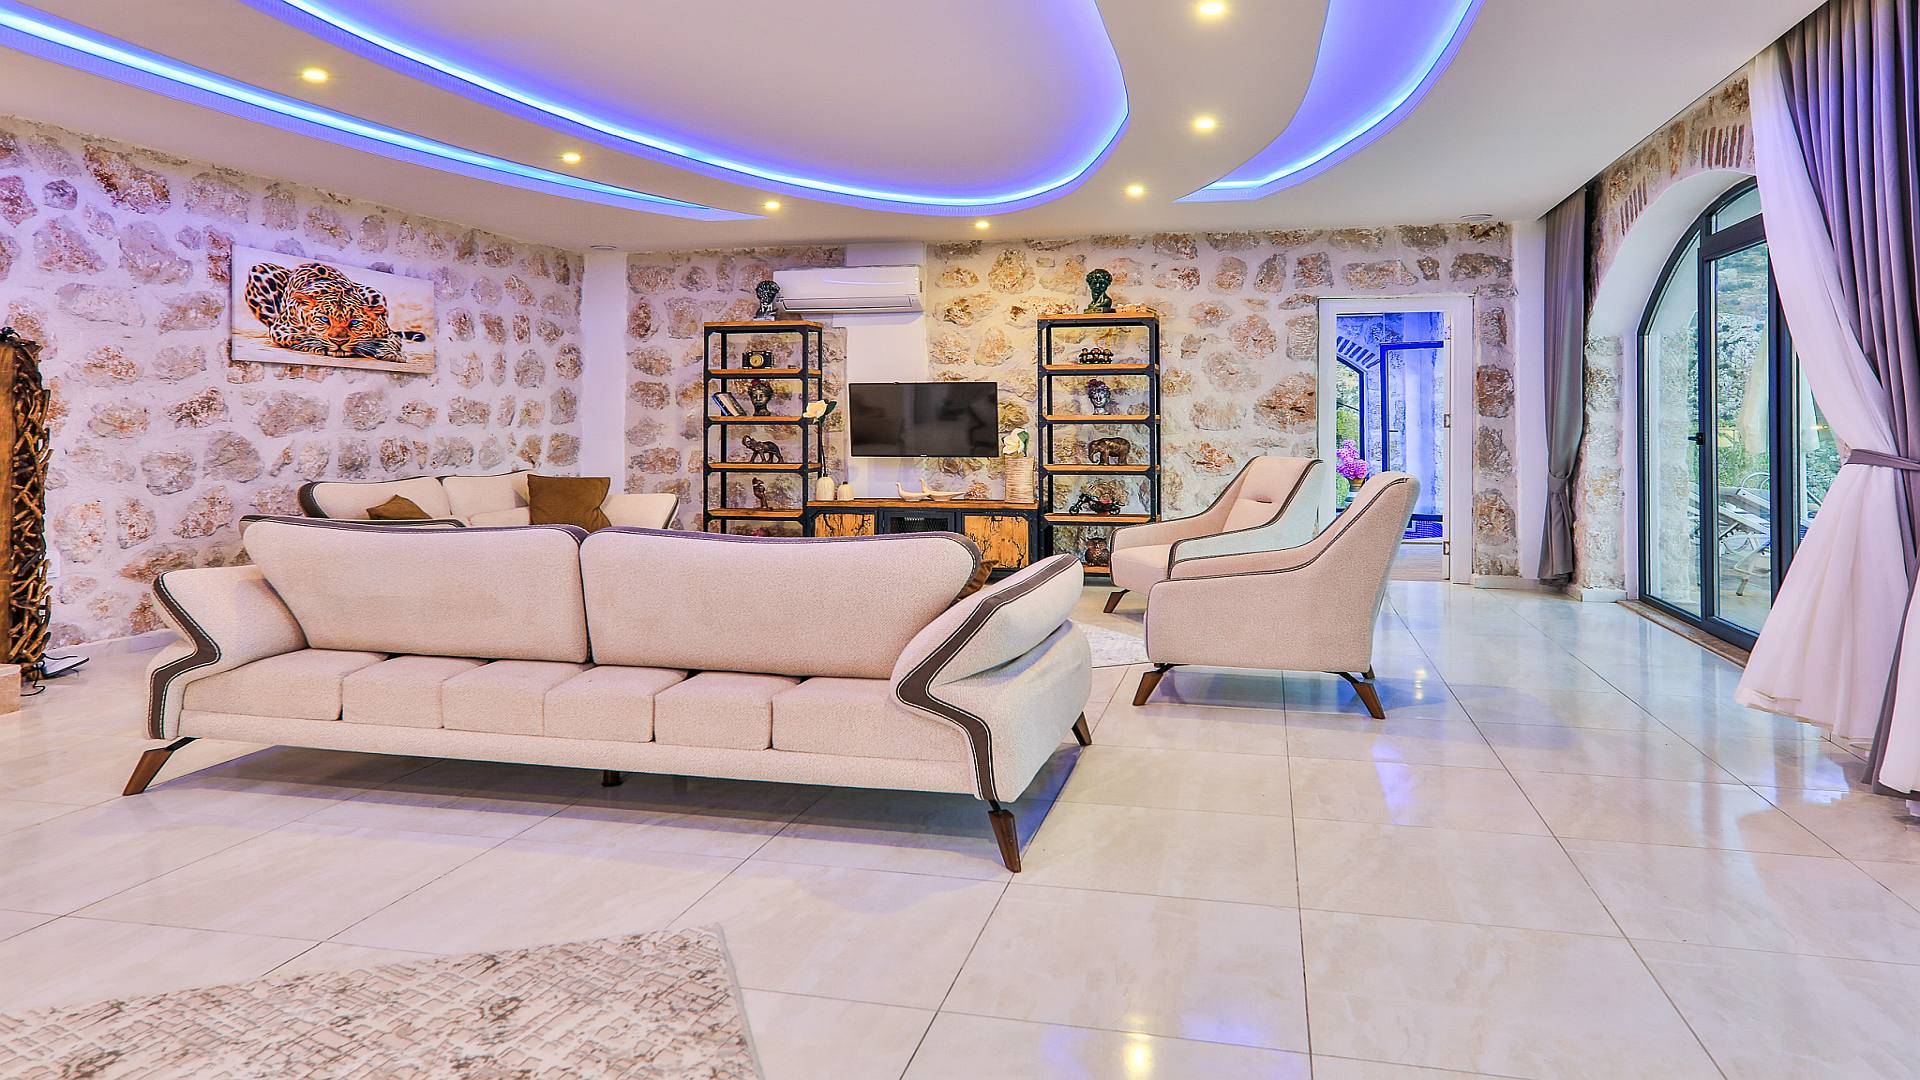 Kalkan'da Muhteşem Tasarıma Sahip, Özel Havuzlu, Yazlık Villa